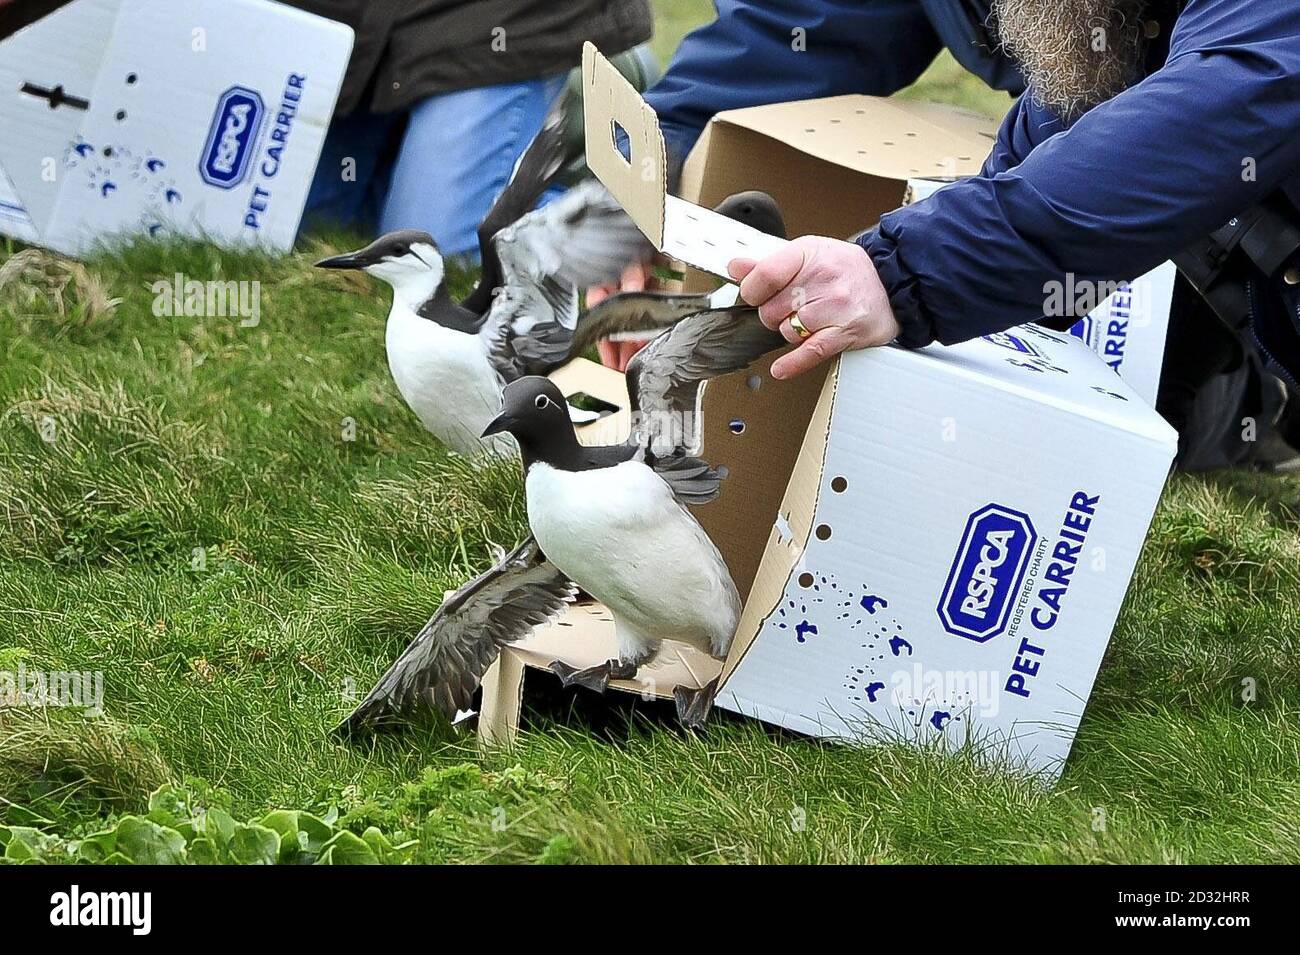 Les guillemots sont remis en liberté par le personnel de la RSPCA sur le bord de Cliff&acirc;&auml à Portland Bill, Dorset.Les oiseaux de mer ont été sauvés après avoir été contaminés par un caoutchouc synthétique incolore. Banque D'Images